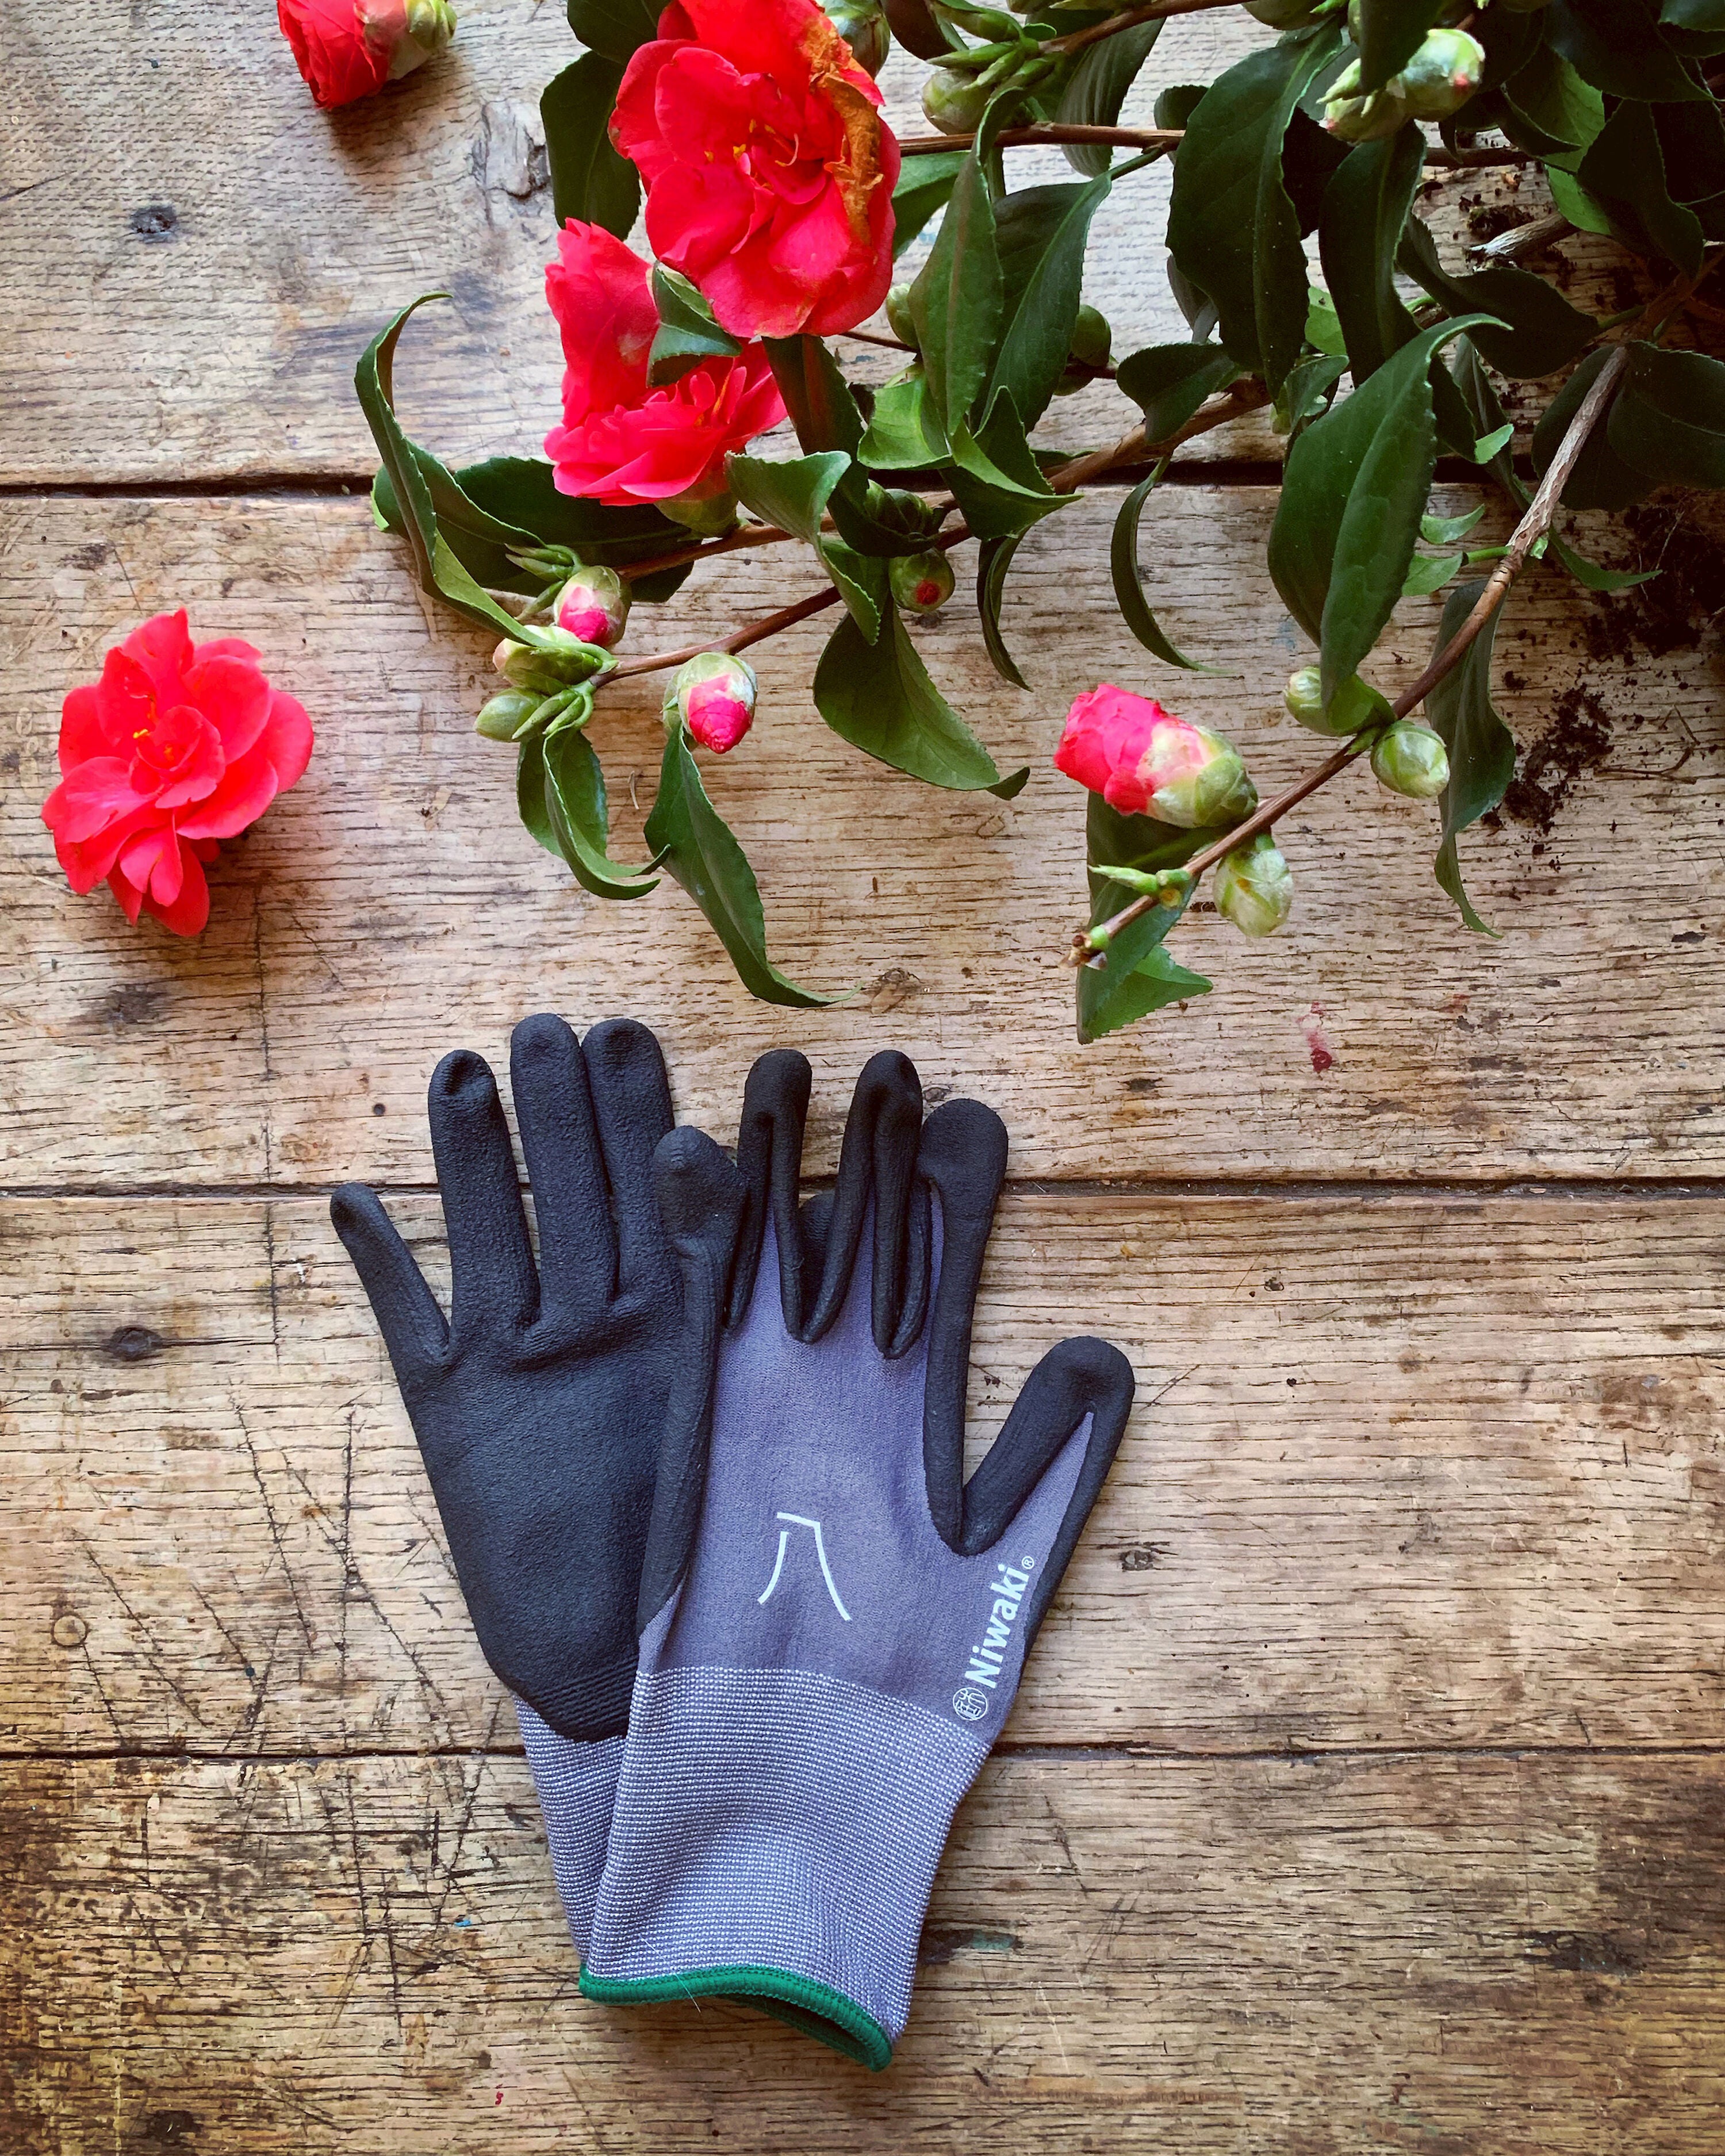 Gardening Gloves - Medium with Green Cuff